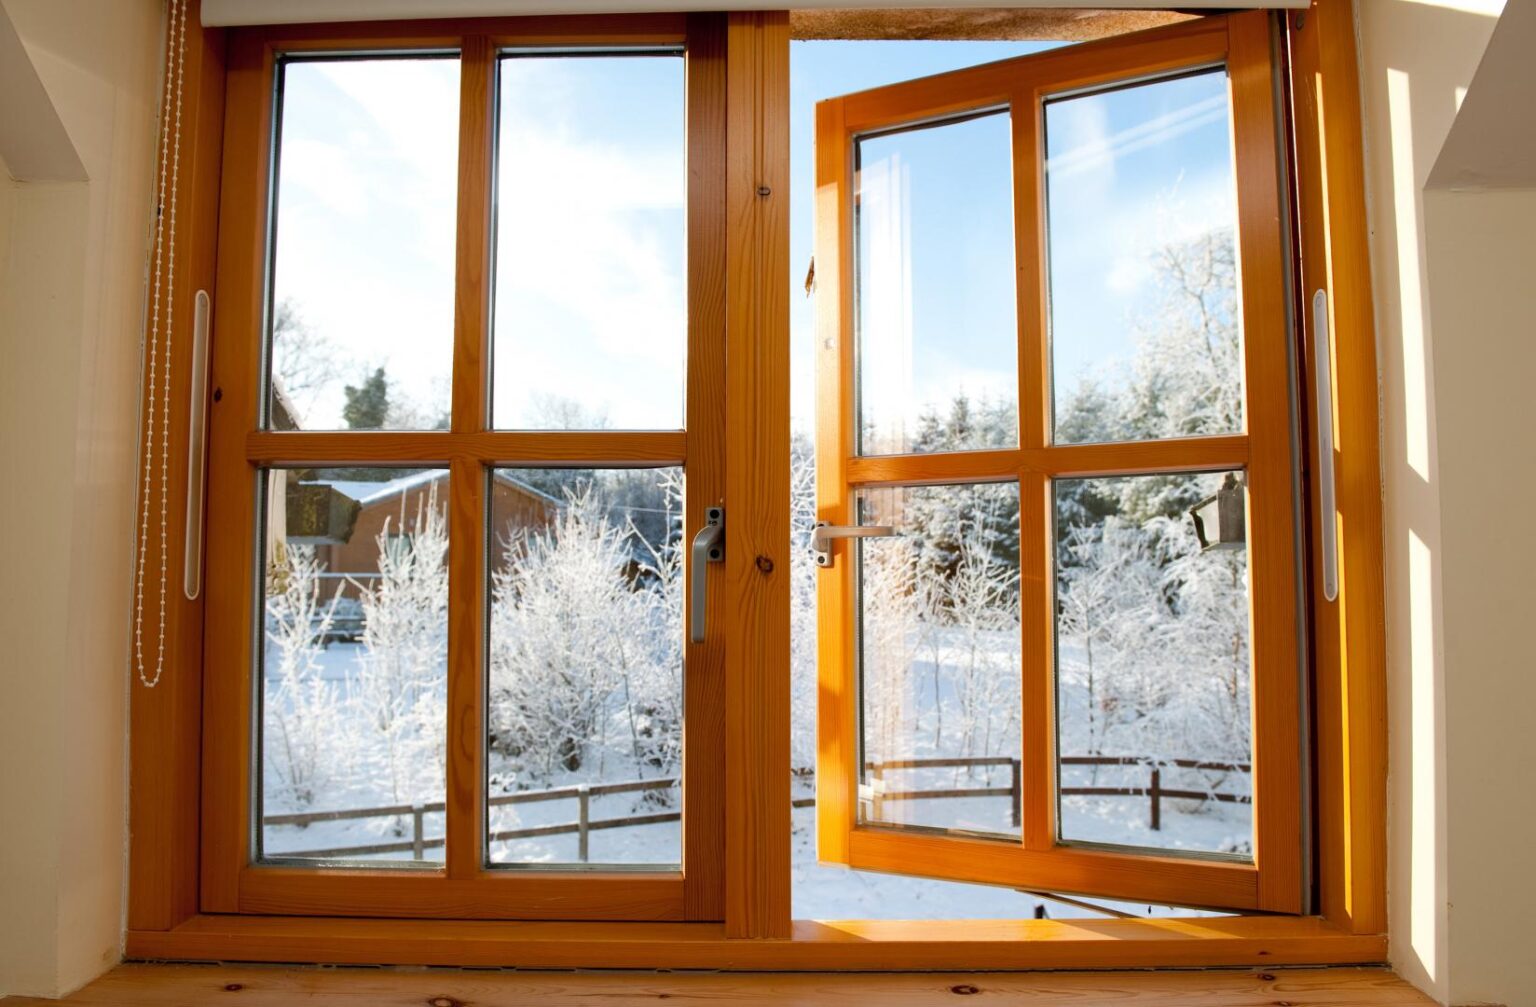 Материал пвх окна. Окно ПВХ трёхстворчатое, 144х175 см. Пластико-деревянные окна. Евроокна деревянные со стеклопакетом. Красивые деревянные окна.